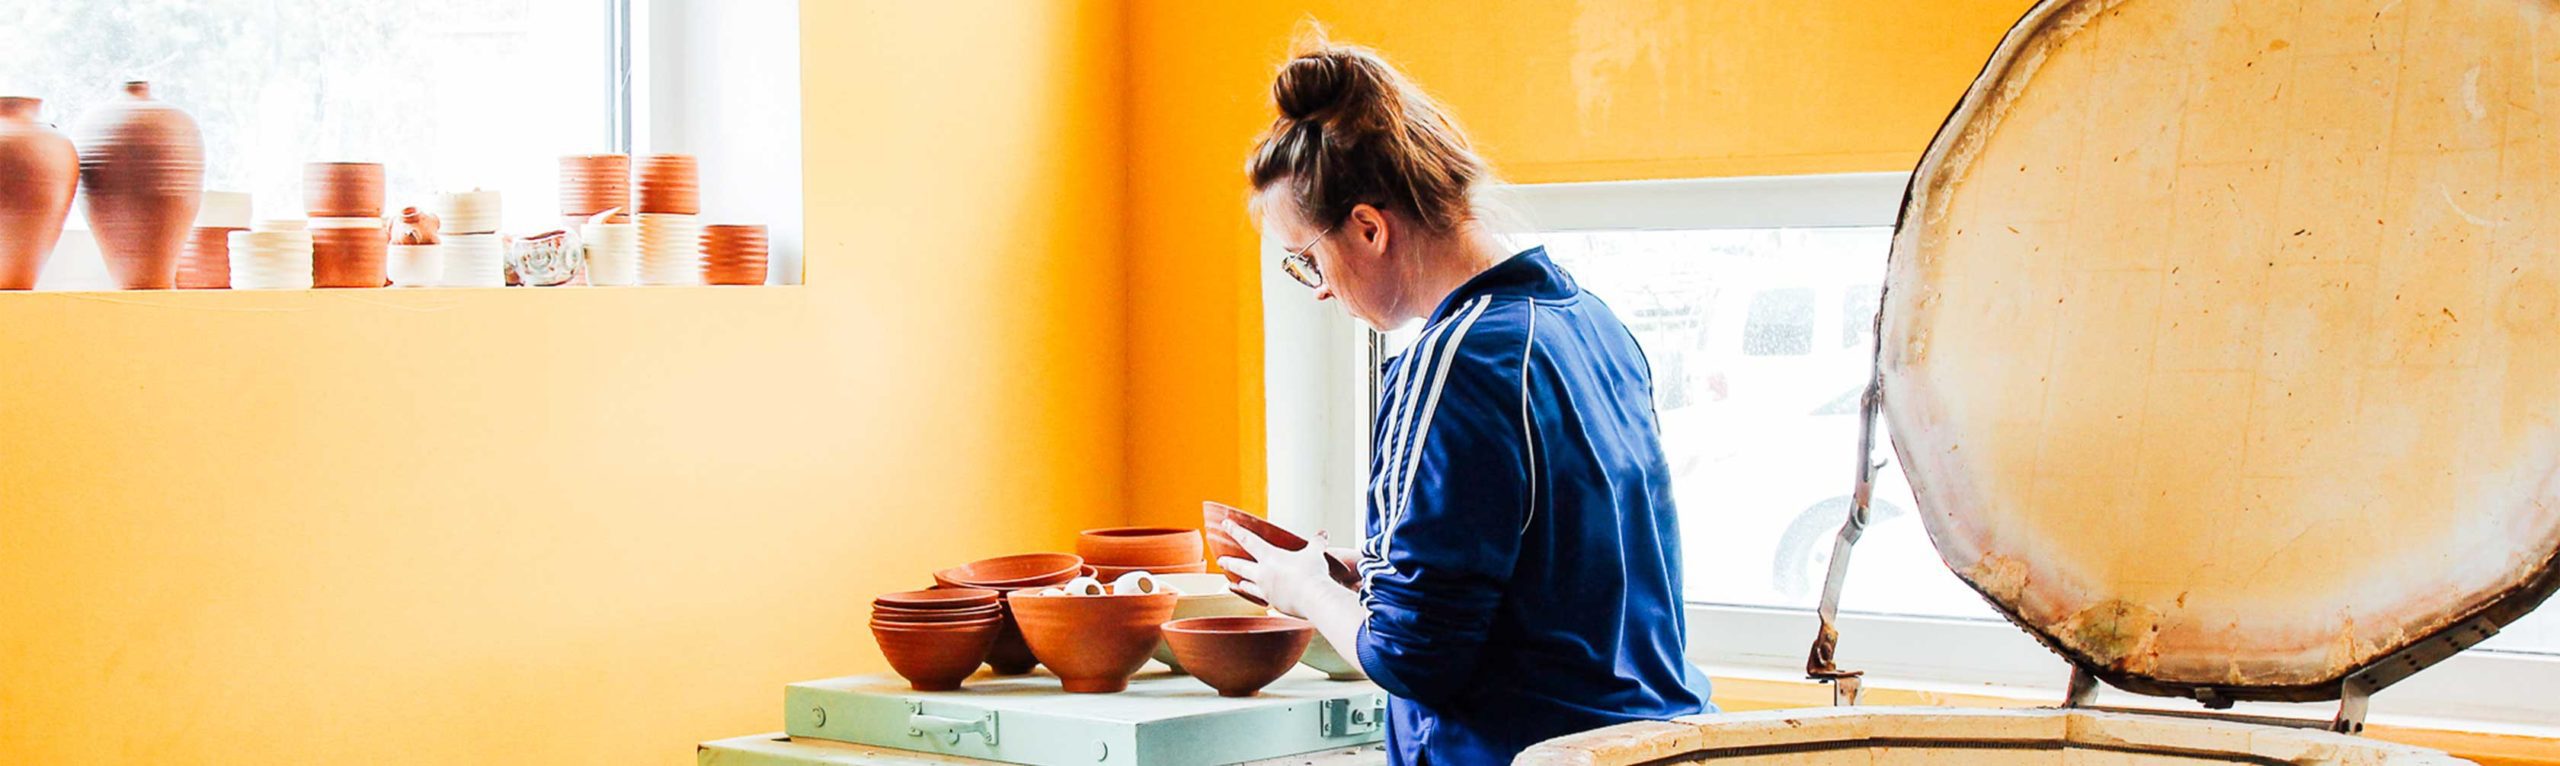 Student working in ceramics studio